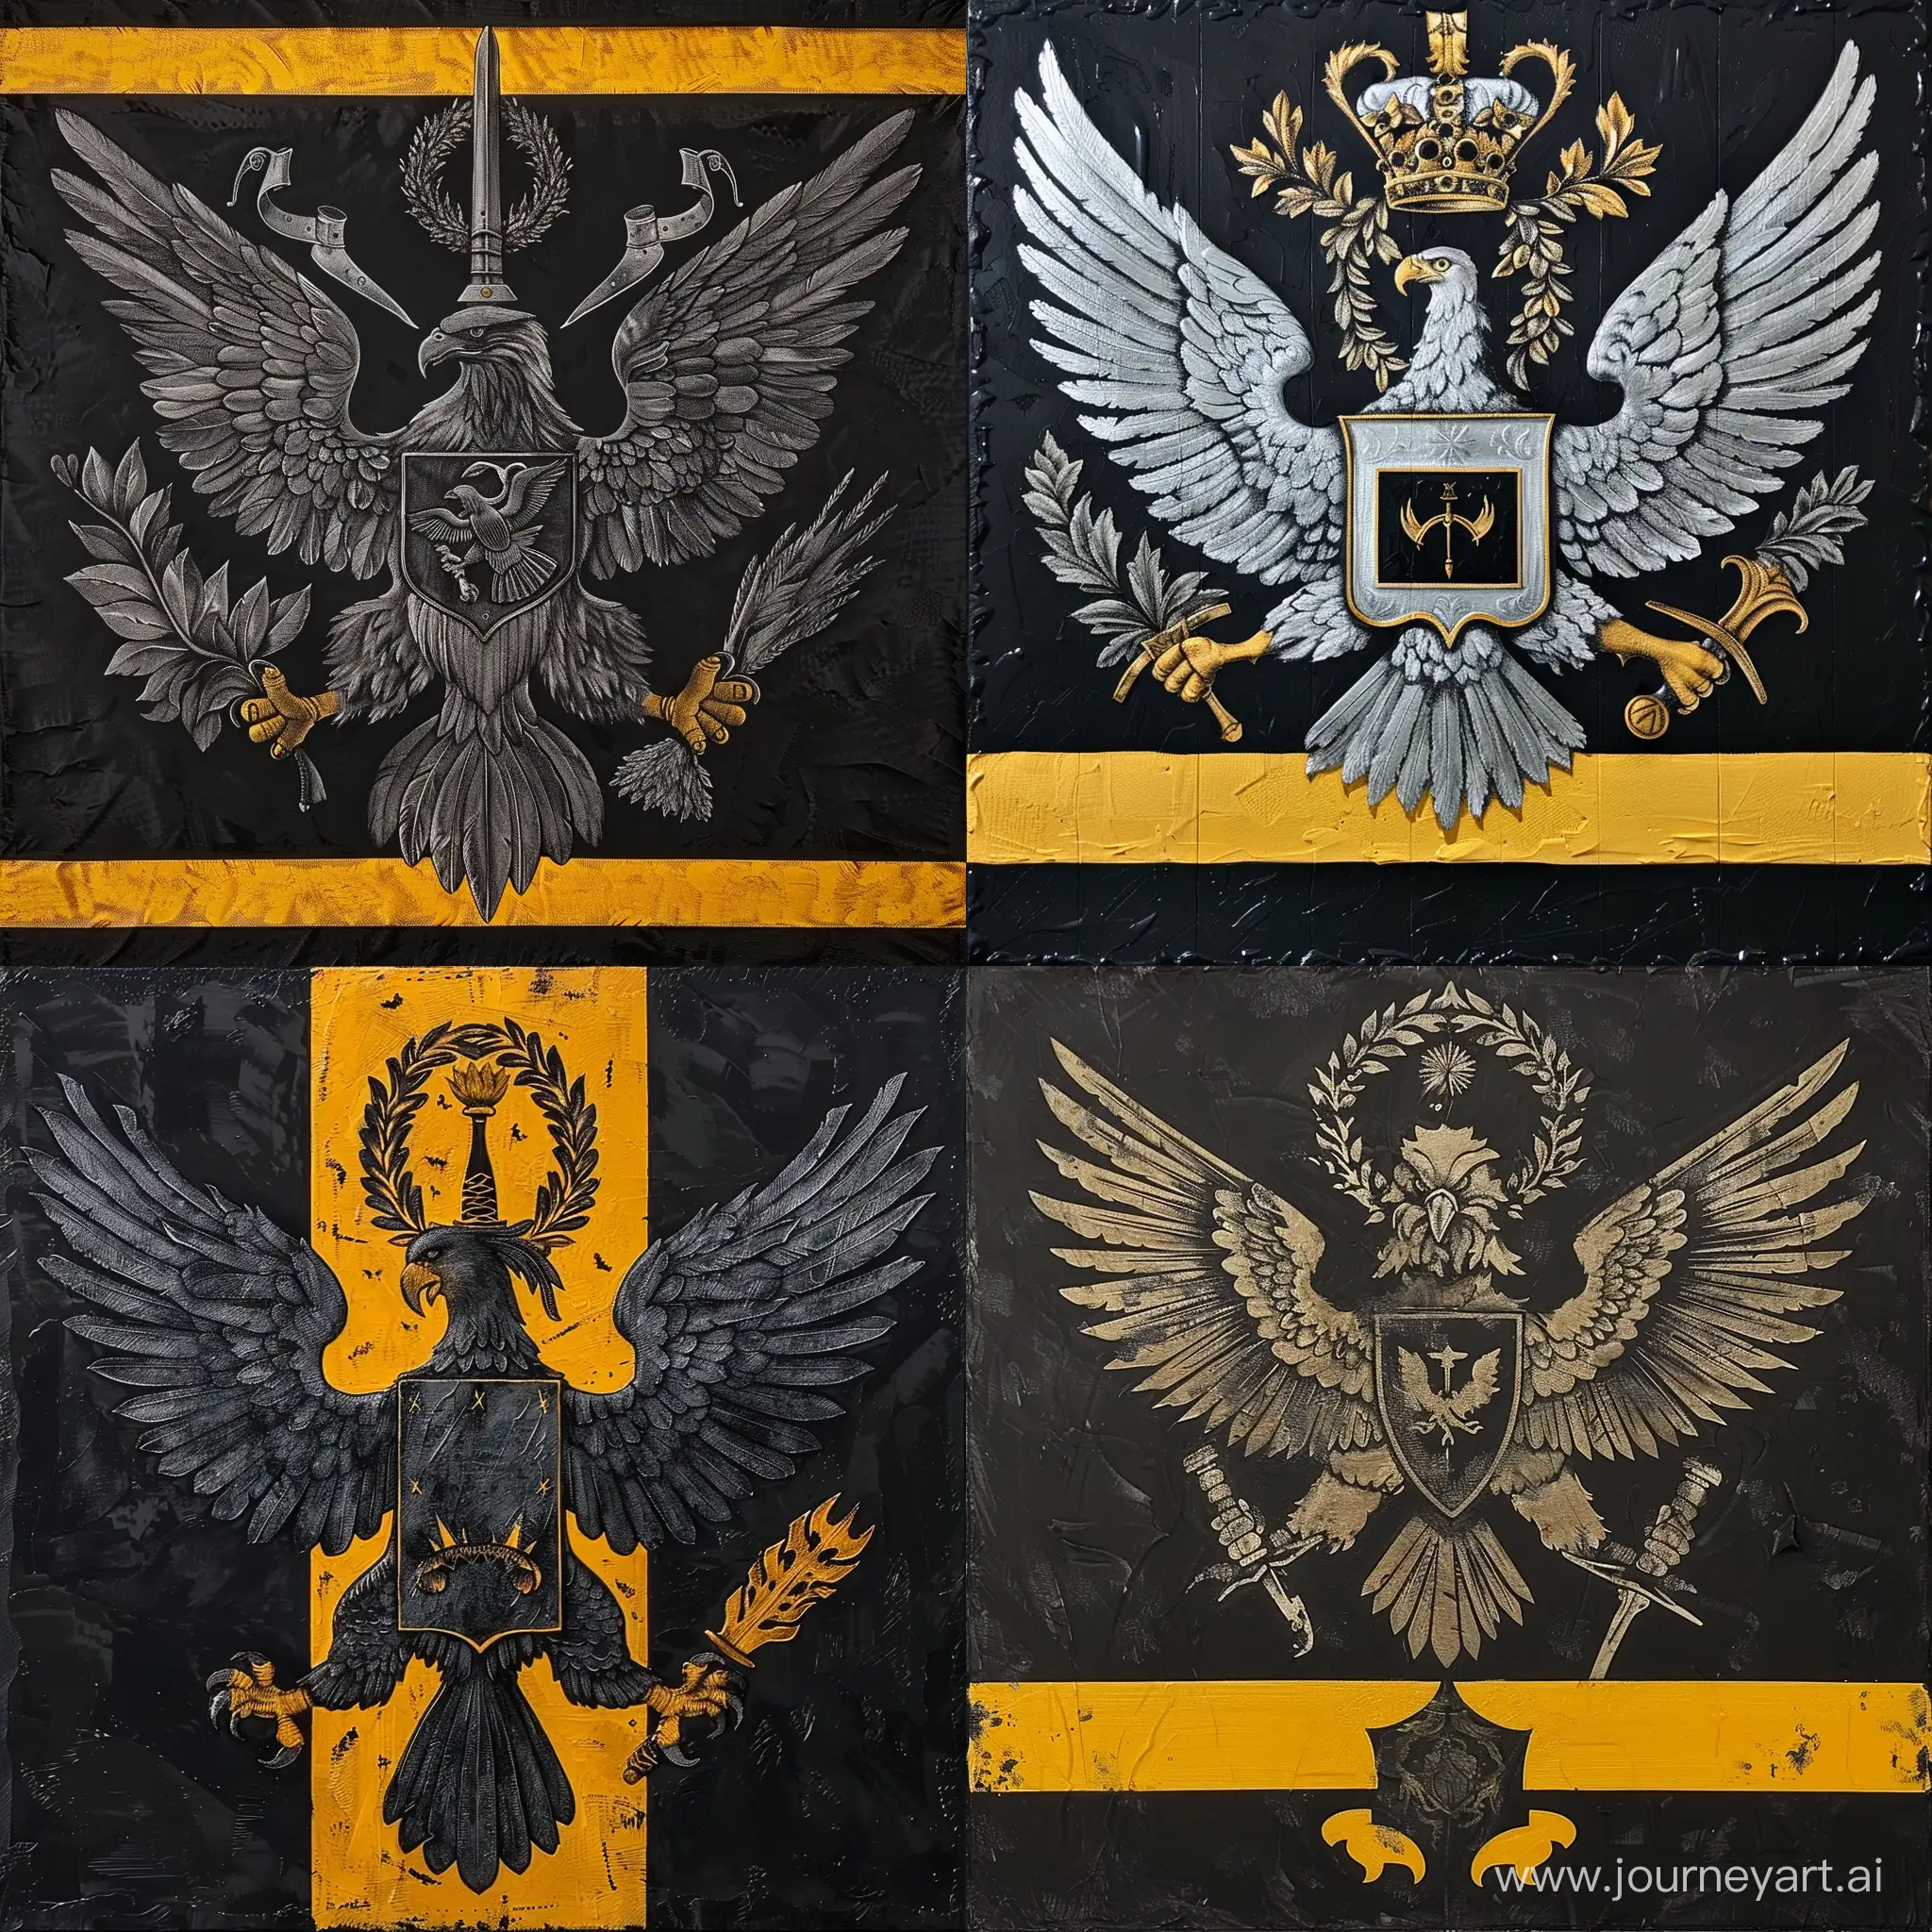 Герб, двухглавый орёл держит венок и меч, фон герба чёрный в жёлтую полоску